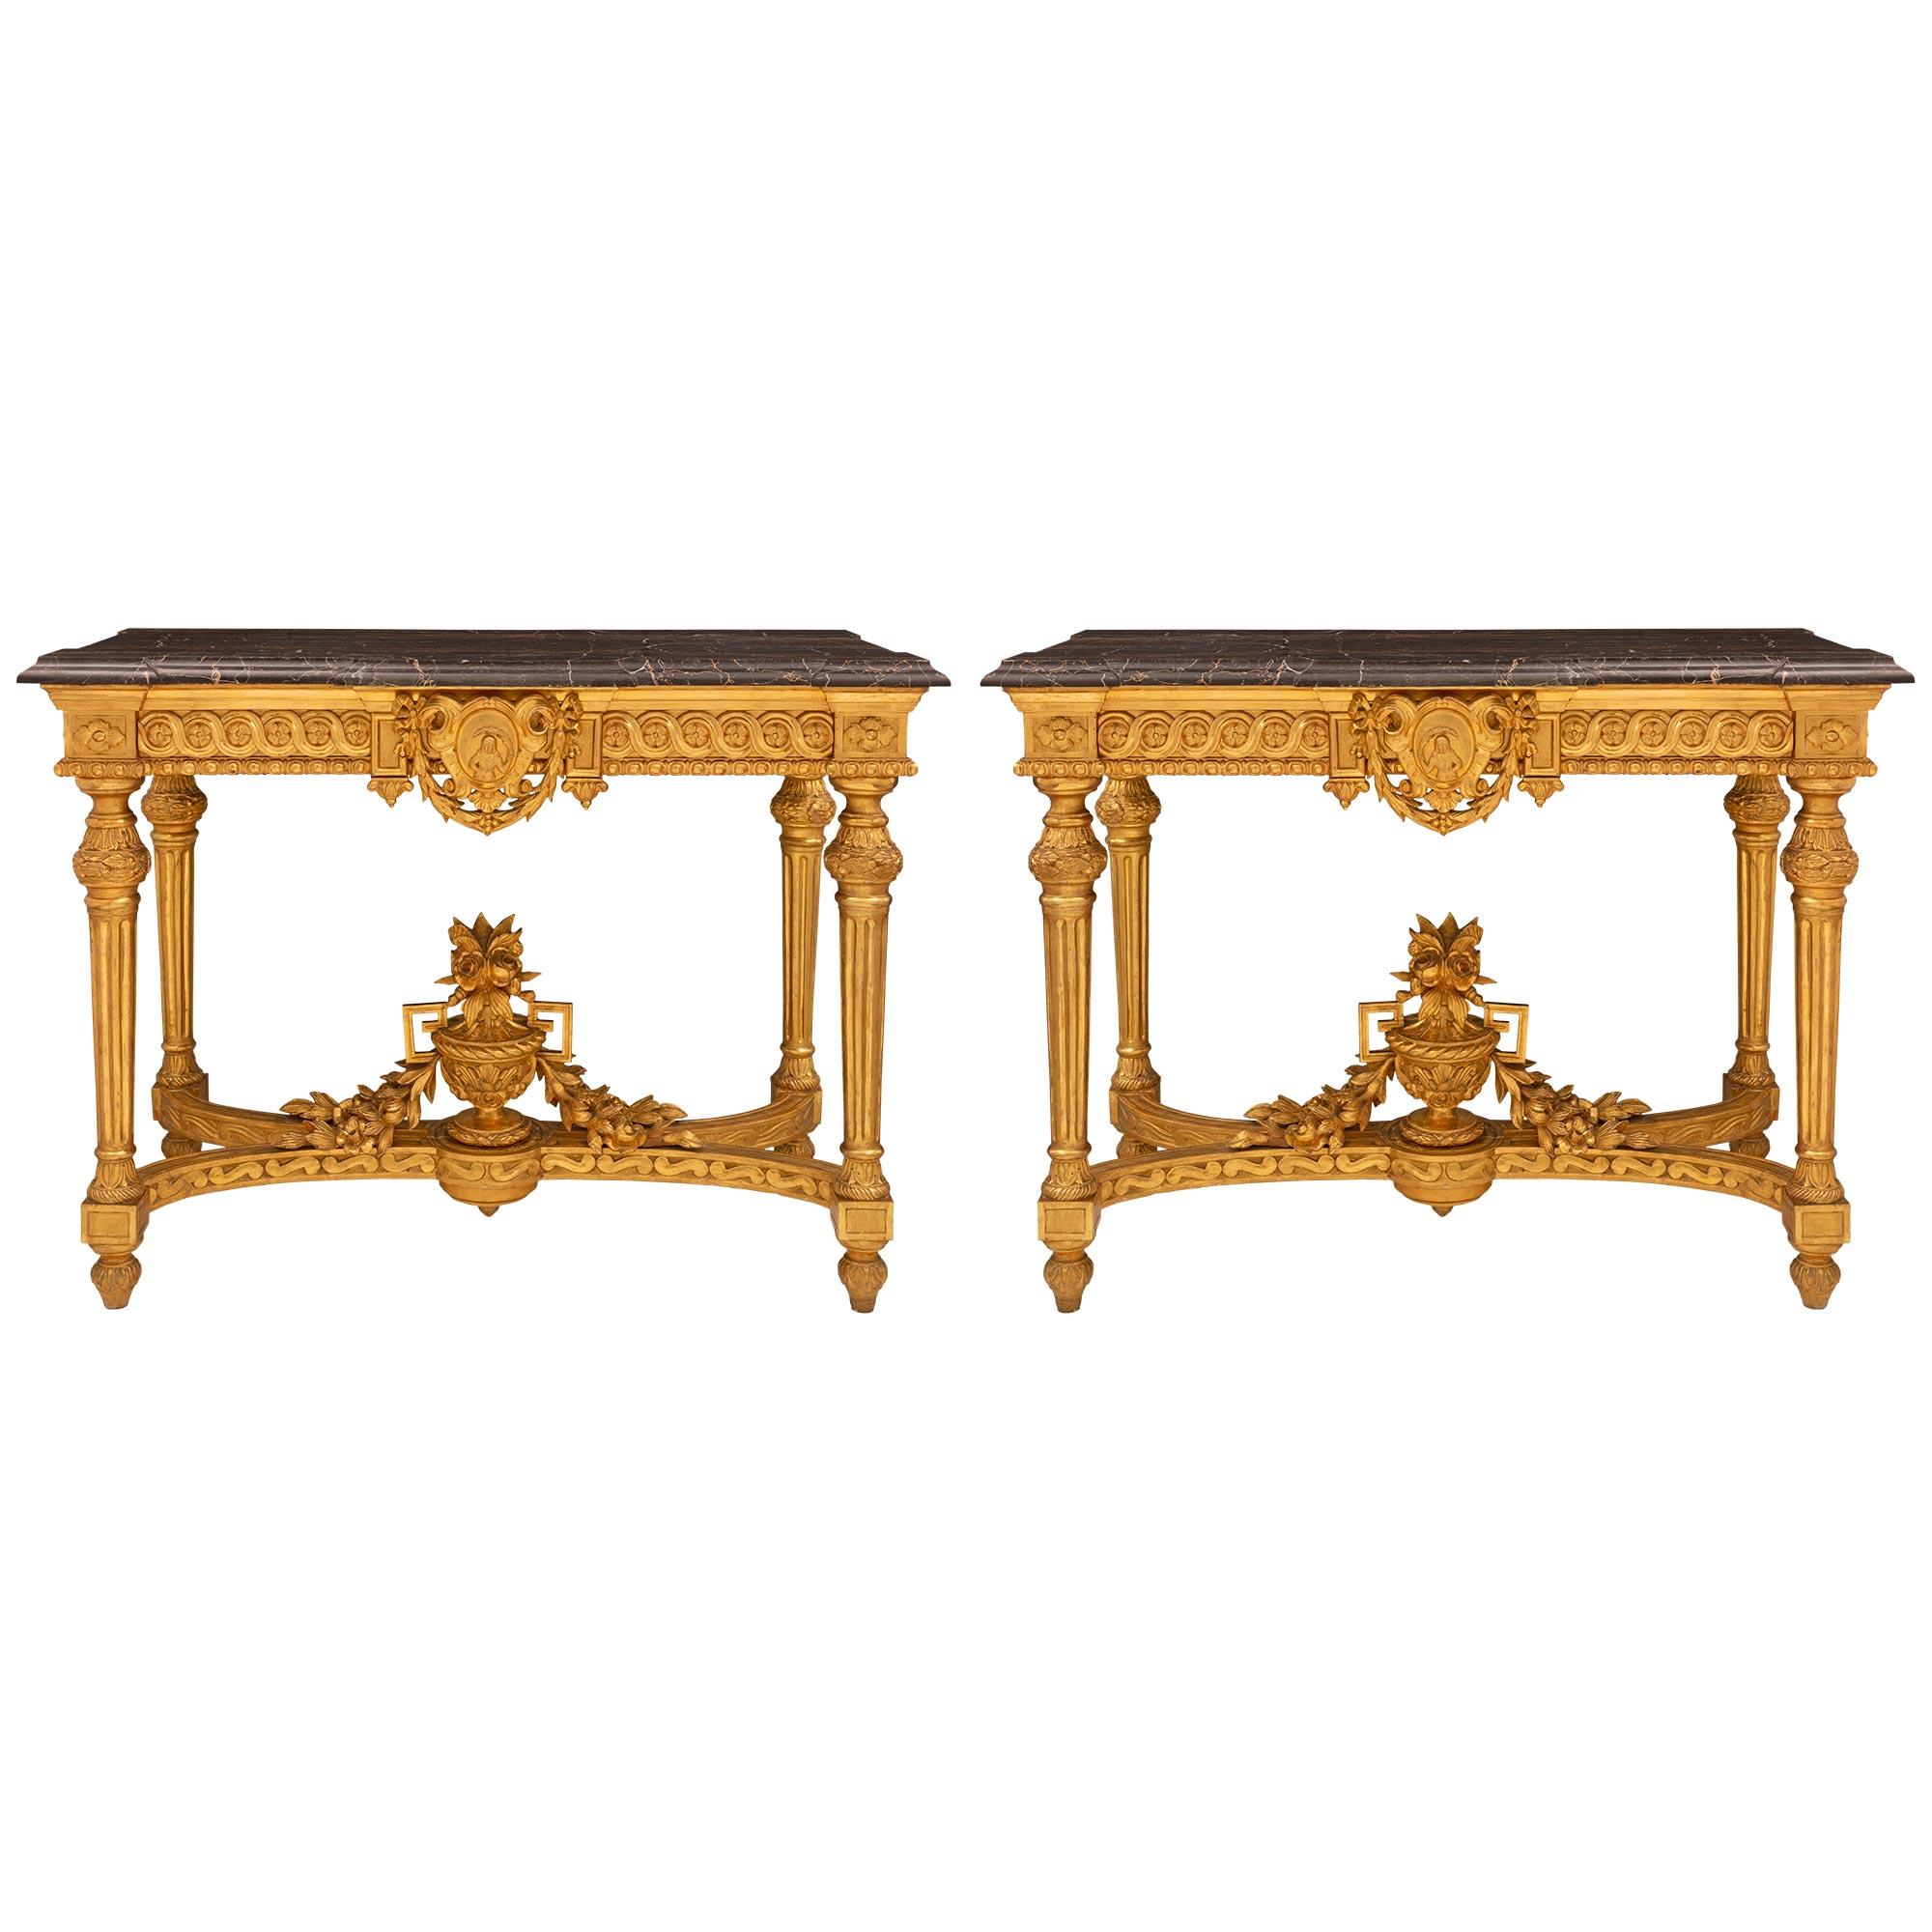 Paire de consoles autoportantes italiennes en bois doré de style Louis XVI du milieu du XIXe siècle